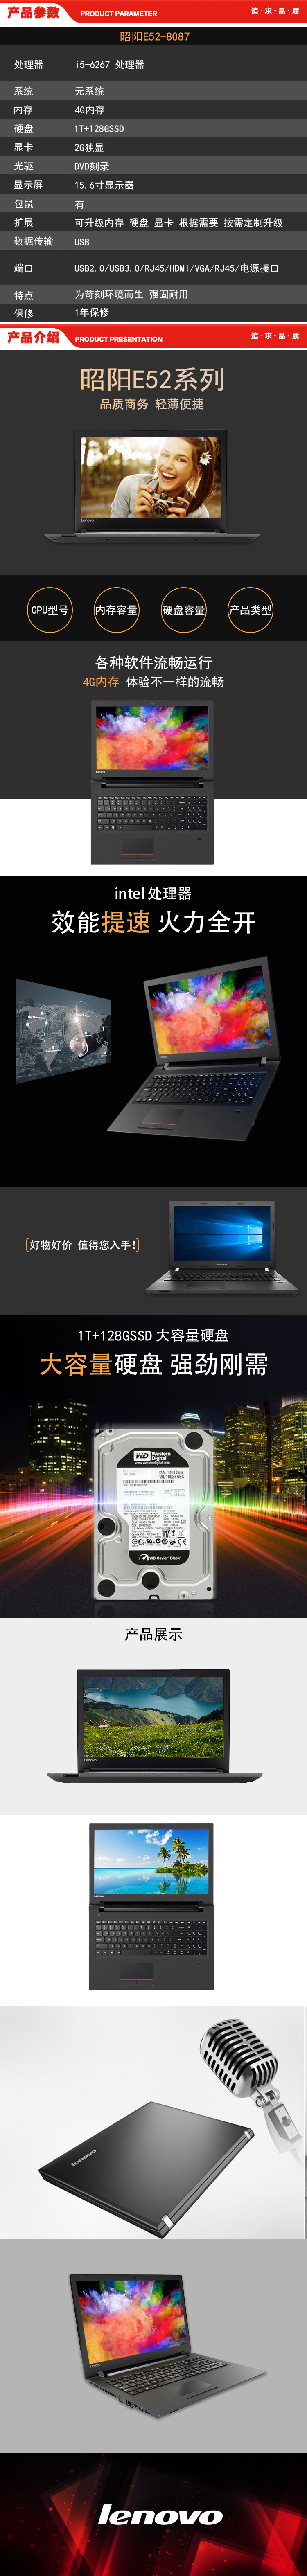 联想 Lenovo 昭阳E52-8087 笔记本 （I5-6267 4G 1T+128GSSD）.jpg